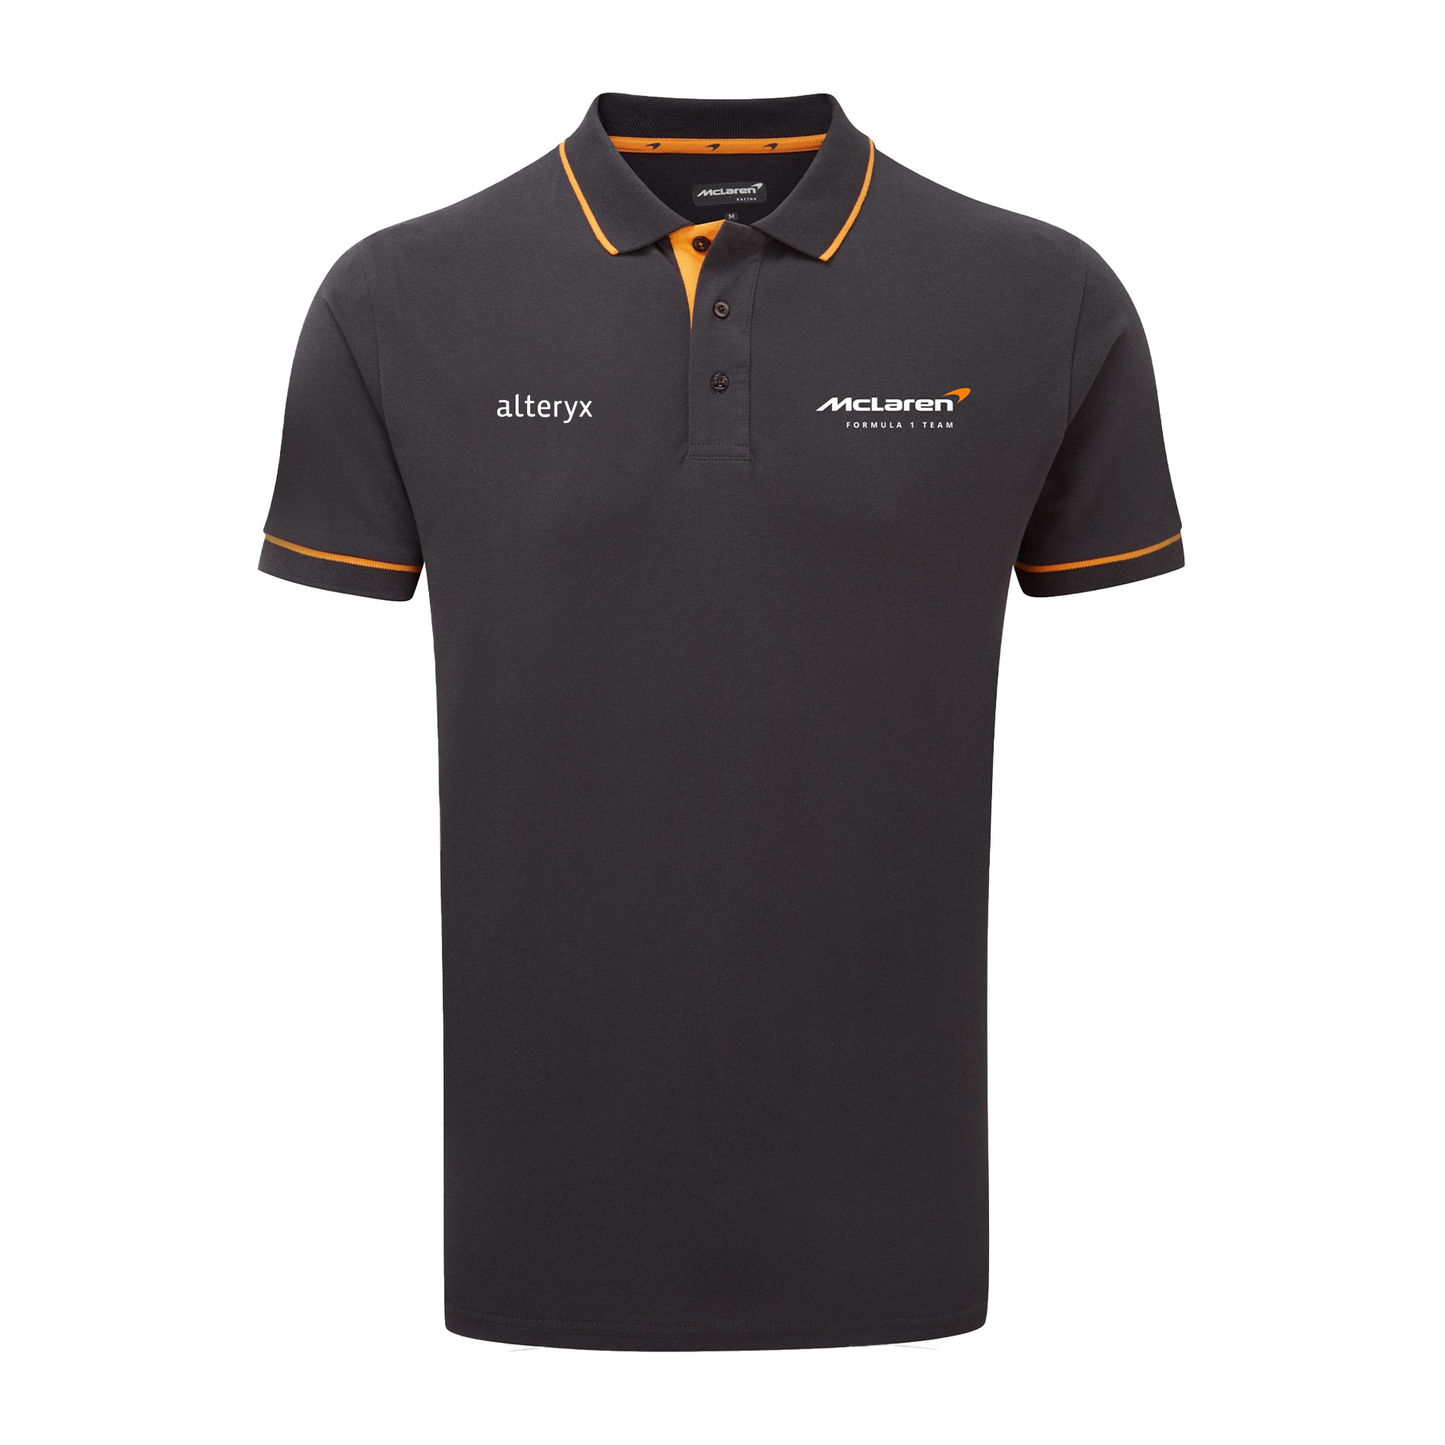 McLaren Co-Branded Partner- Polo Shirt